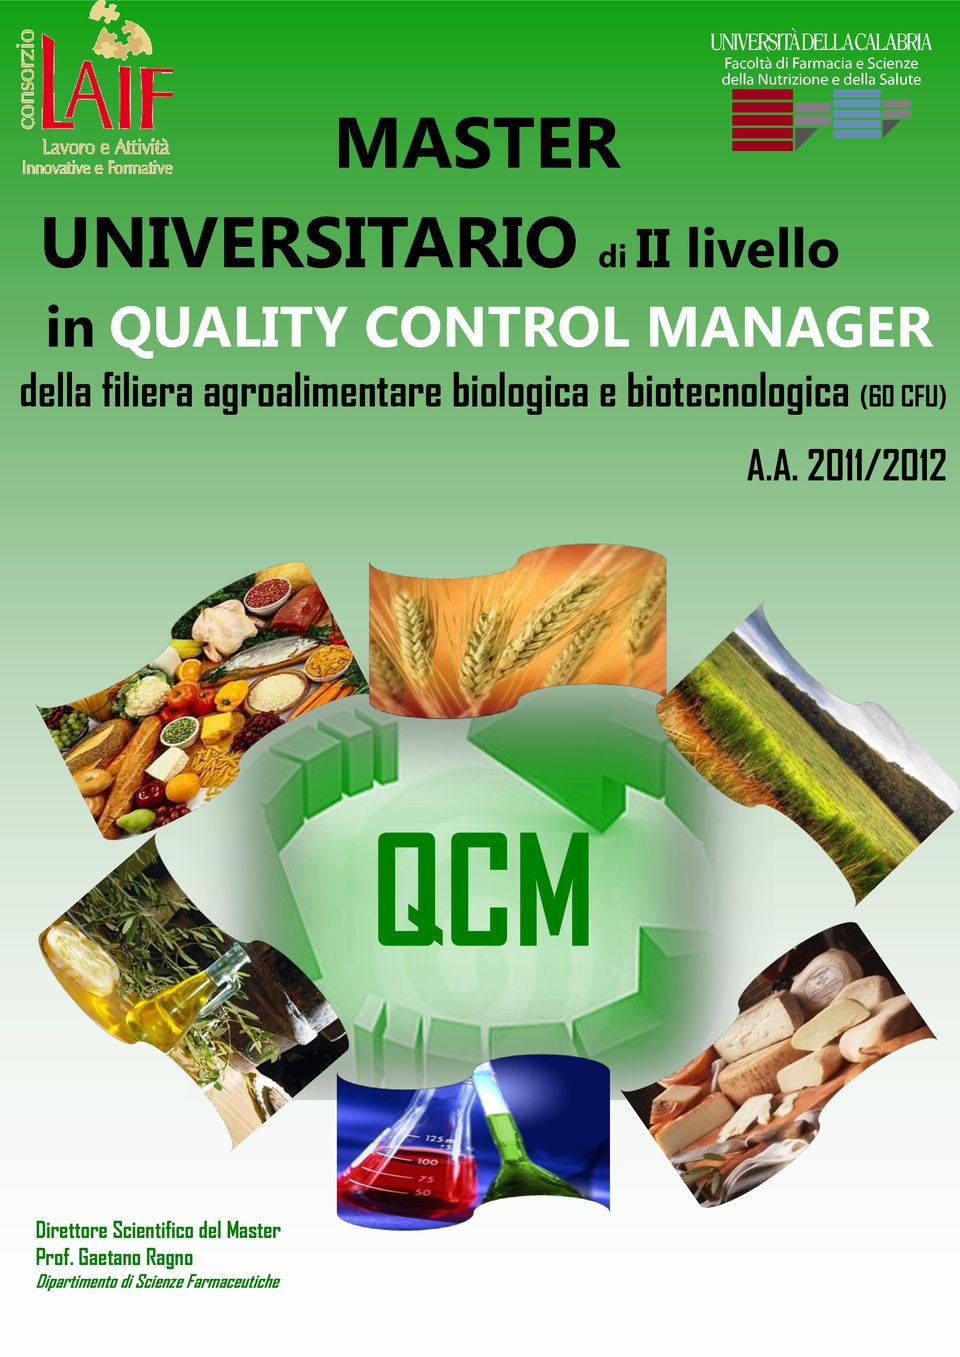 biotecnologica (60 CFU) A.